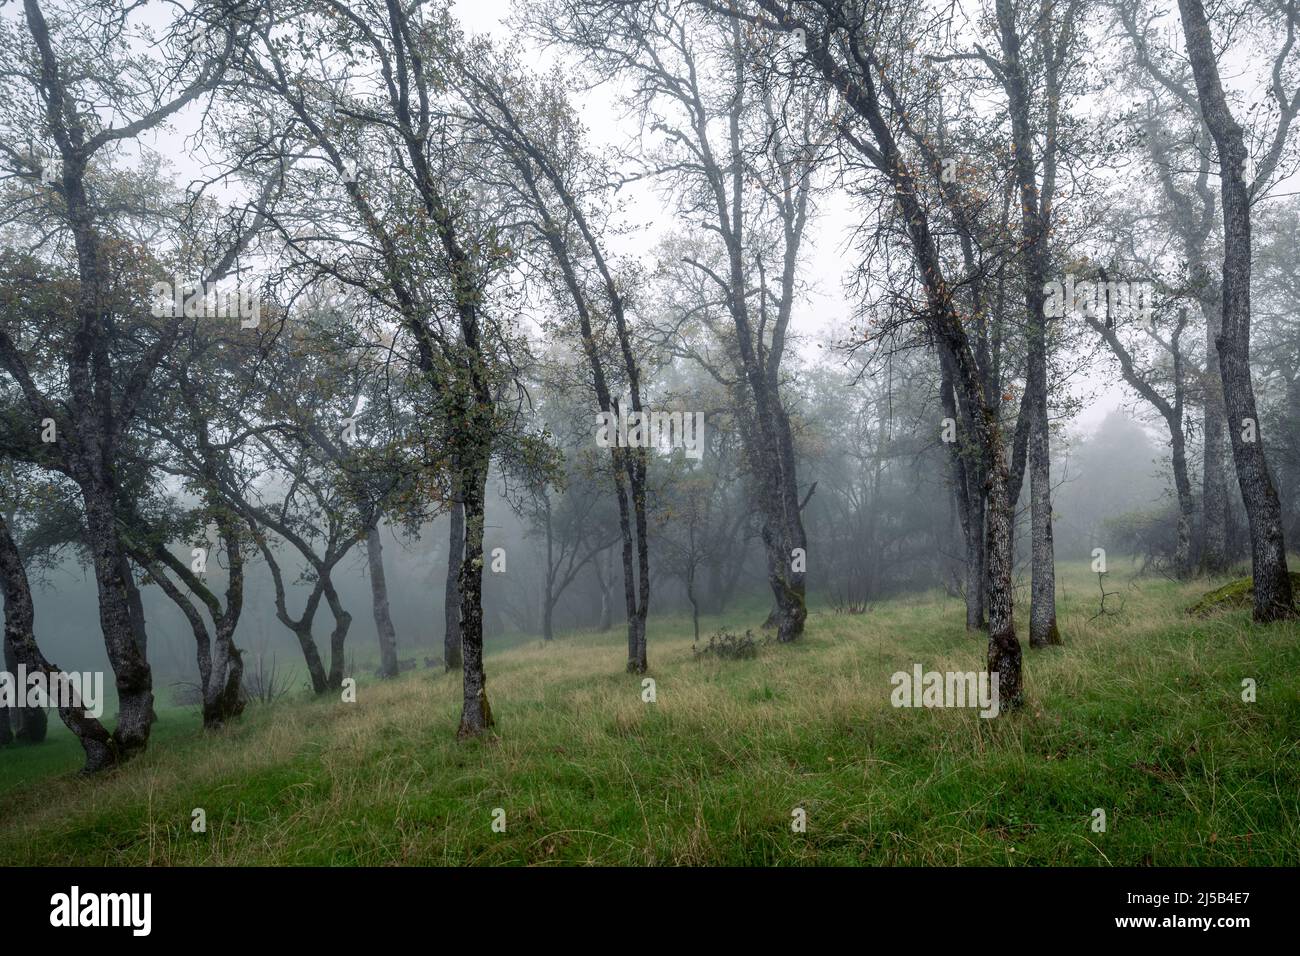 Oak trees on a hillside shrouded in early morning fog. Stock Photo